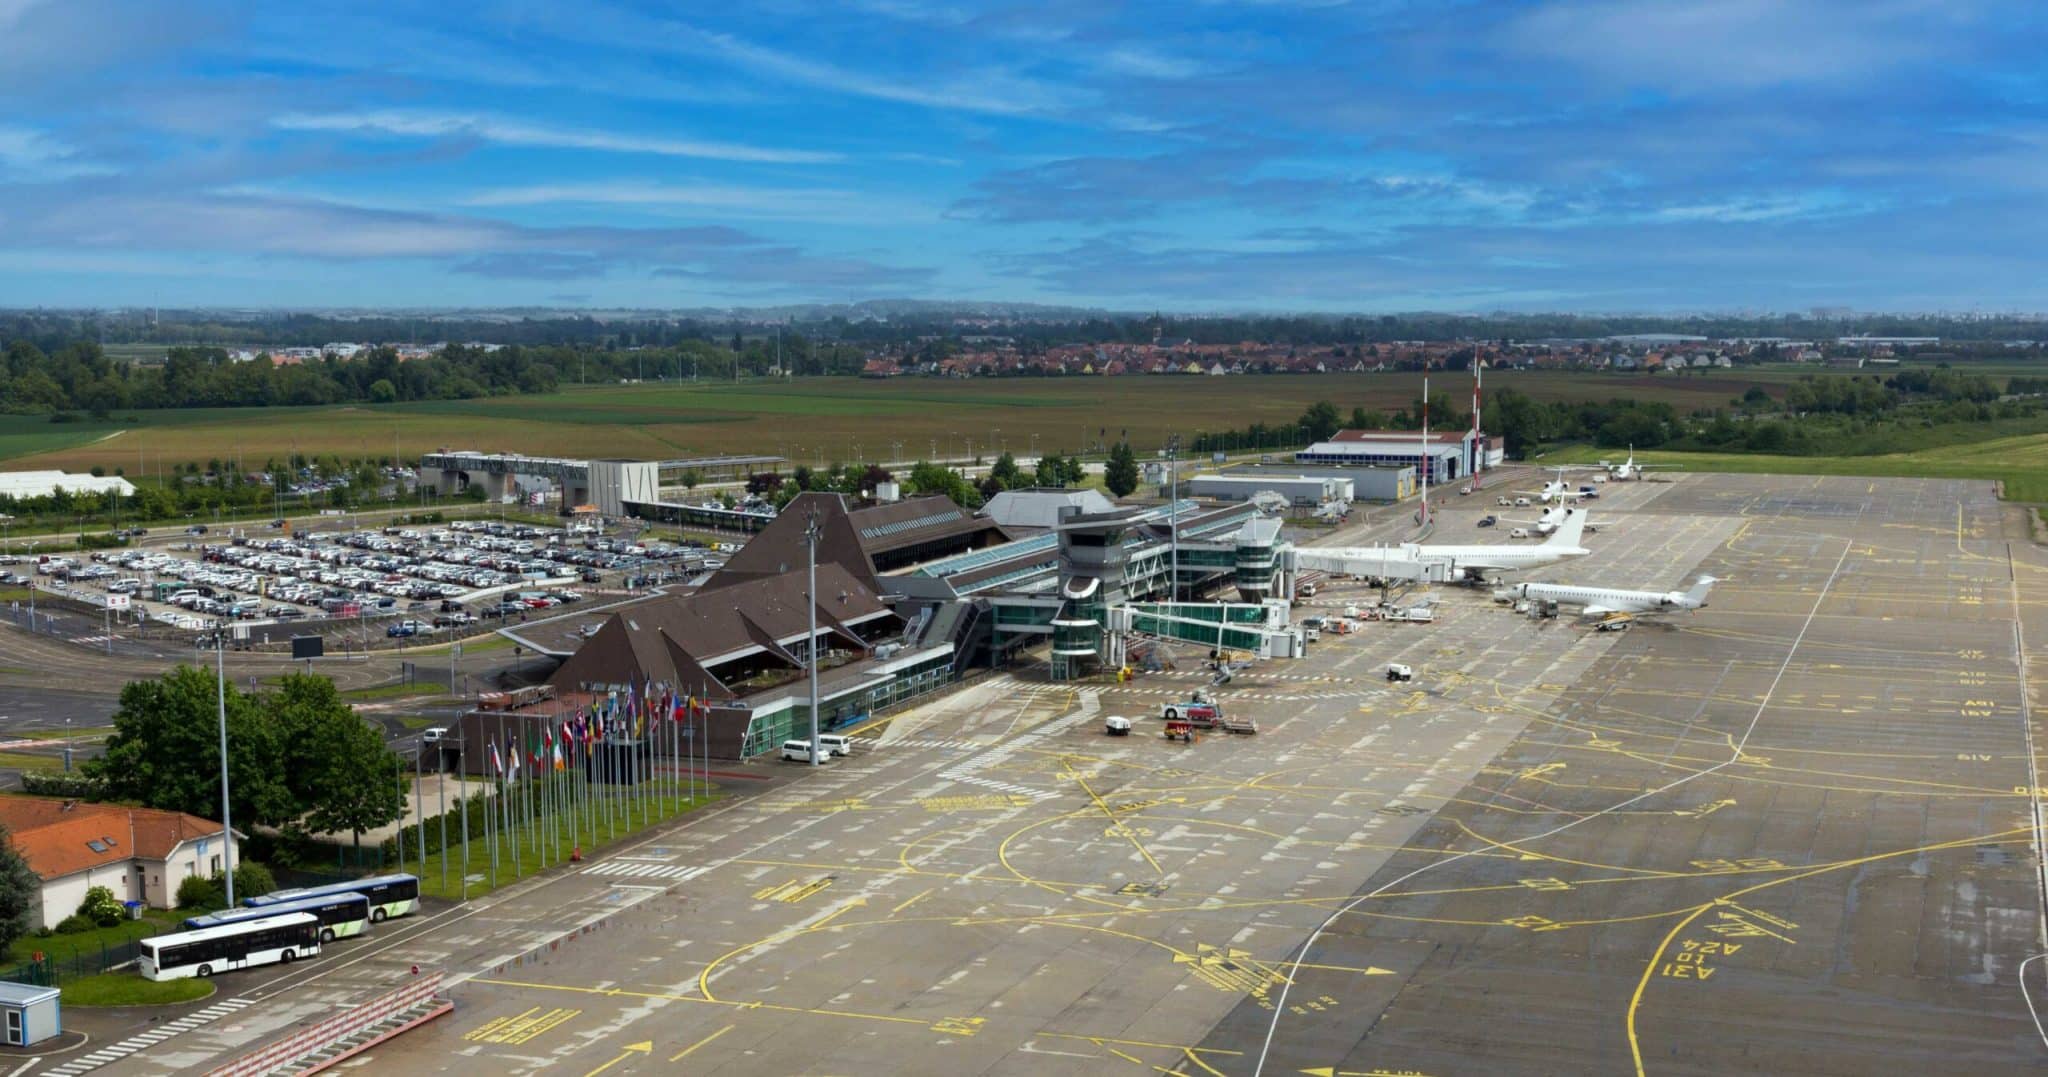 נמל התעופה של שטרסבורג נסגר מה-14 במרץ עד ה-14 באפריל לרגל שיפוץ המסלול